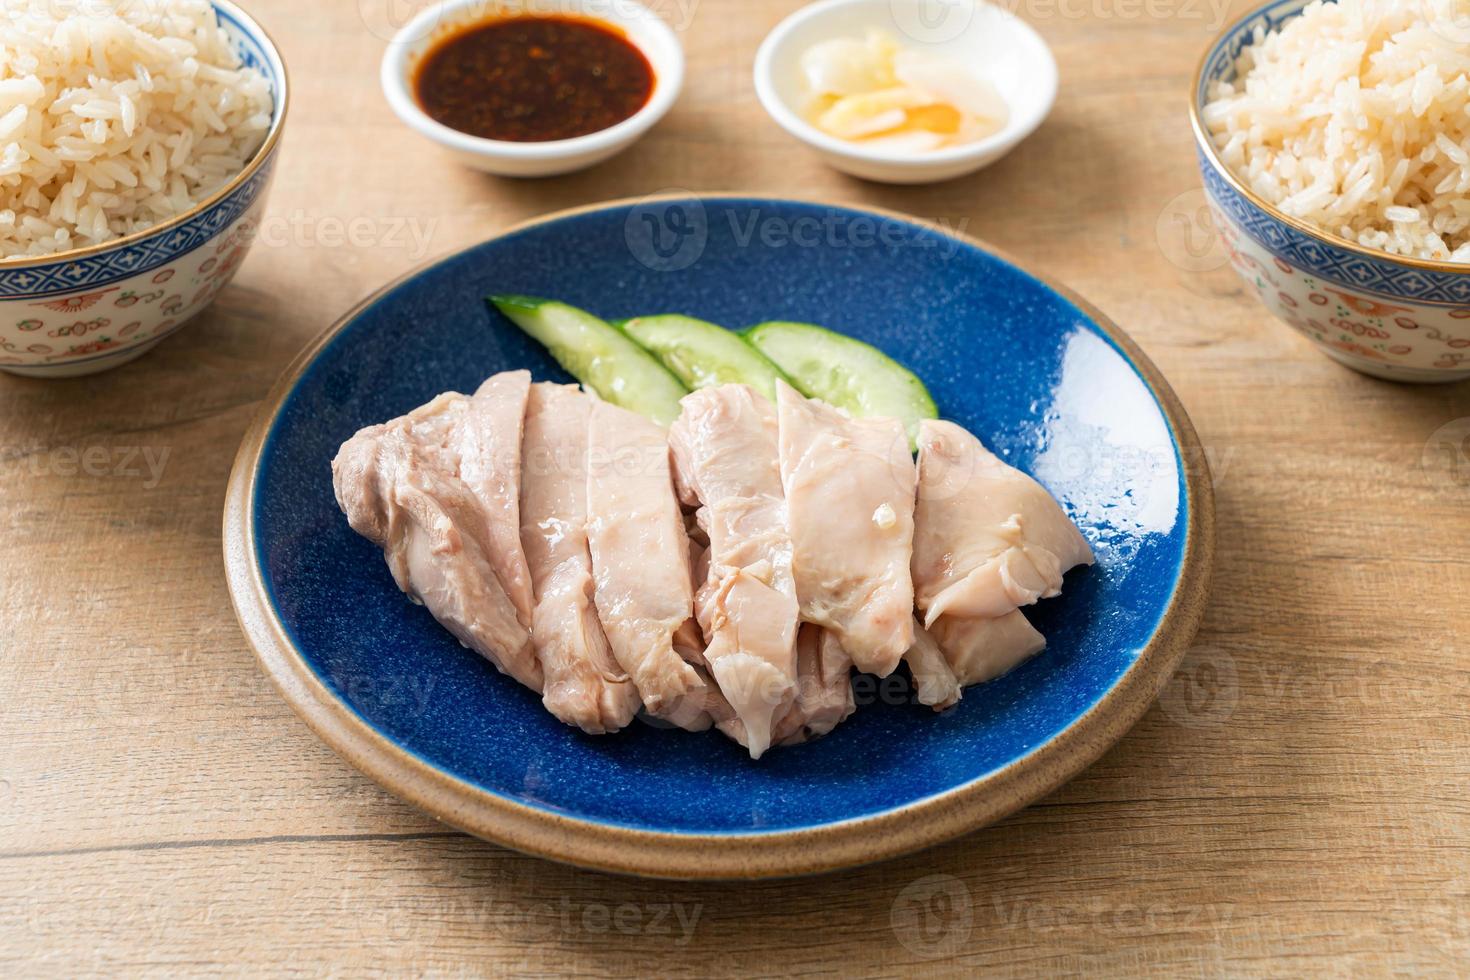 Hainanischer Hühnerreis oder Reis mit Hühnersuppe gedünstet foto